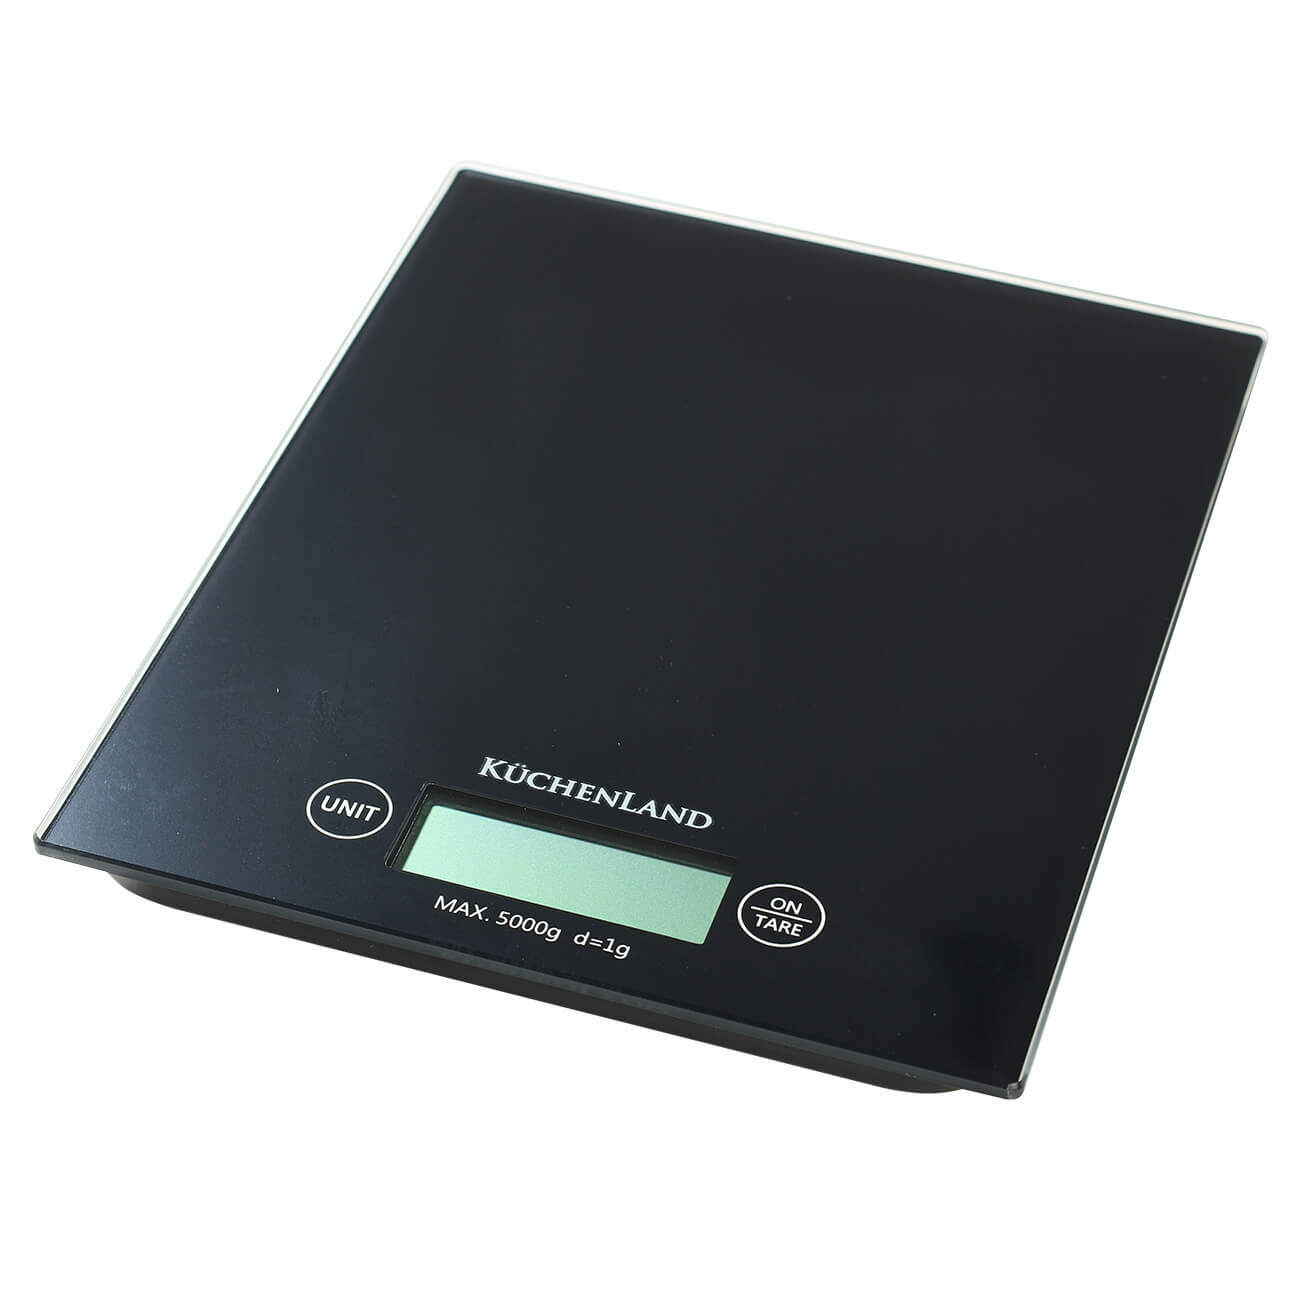 весы кухонные luazon lvk 701 корица электронные до 7 кг Весы кухонные, 20х16 см, электронные, стекло/пластик, черные, Libra